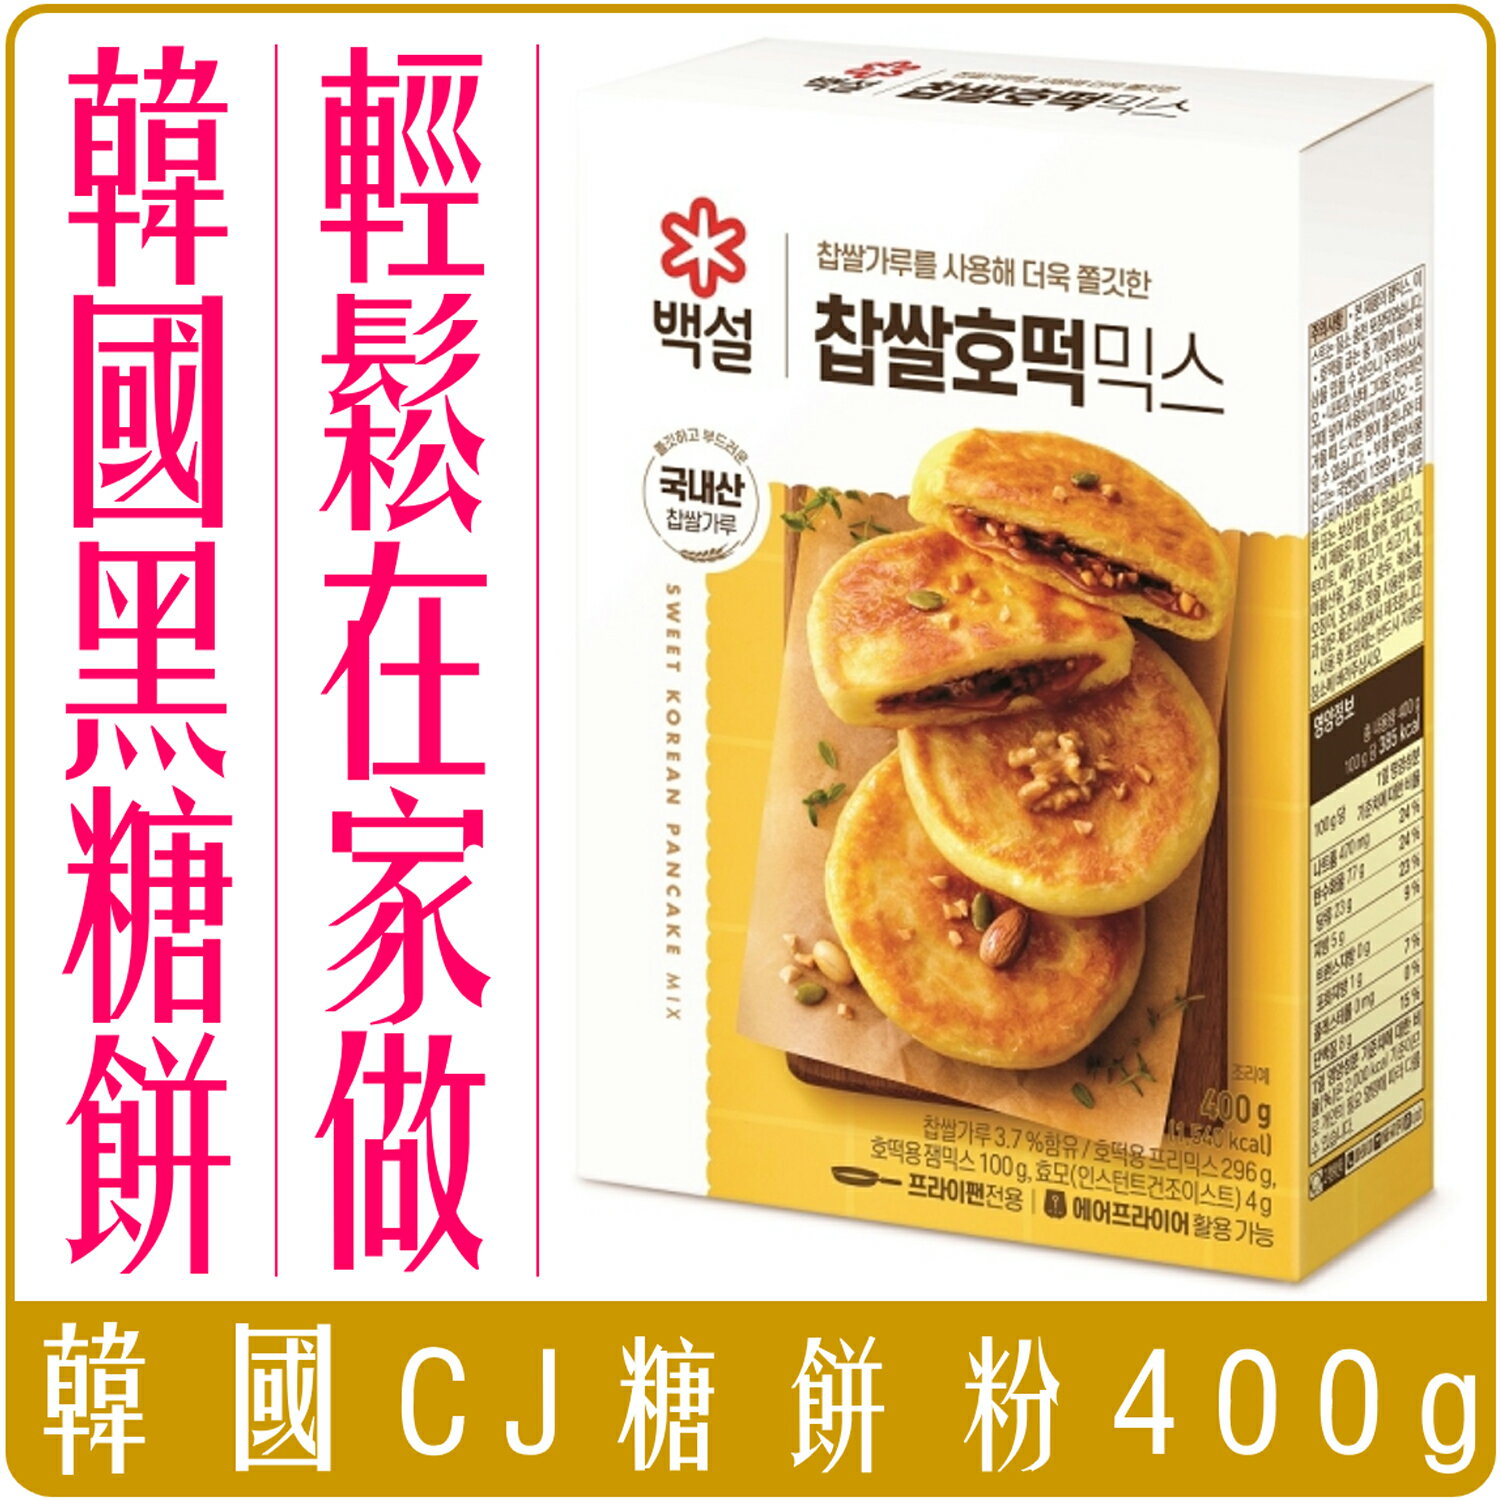 《 Chara 微百貨 》韓國 CJ 糖 煎餅 預拌 粉 糖煎餅粉 煎餅粉 尹食堂 鬆餅粉 호떡 糖餅粉